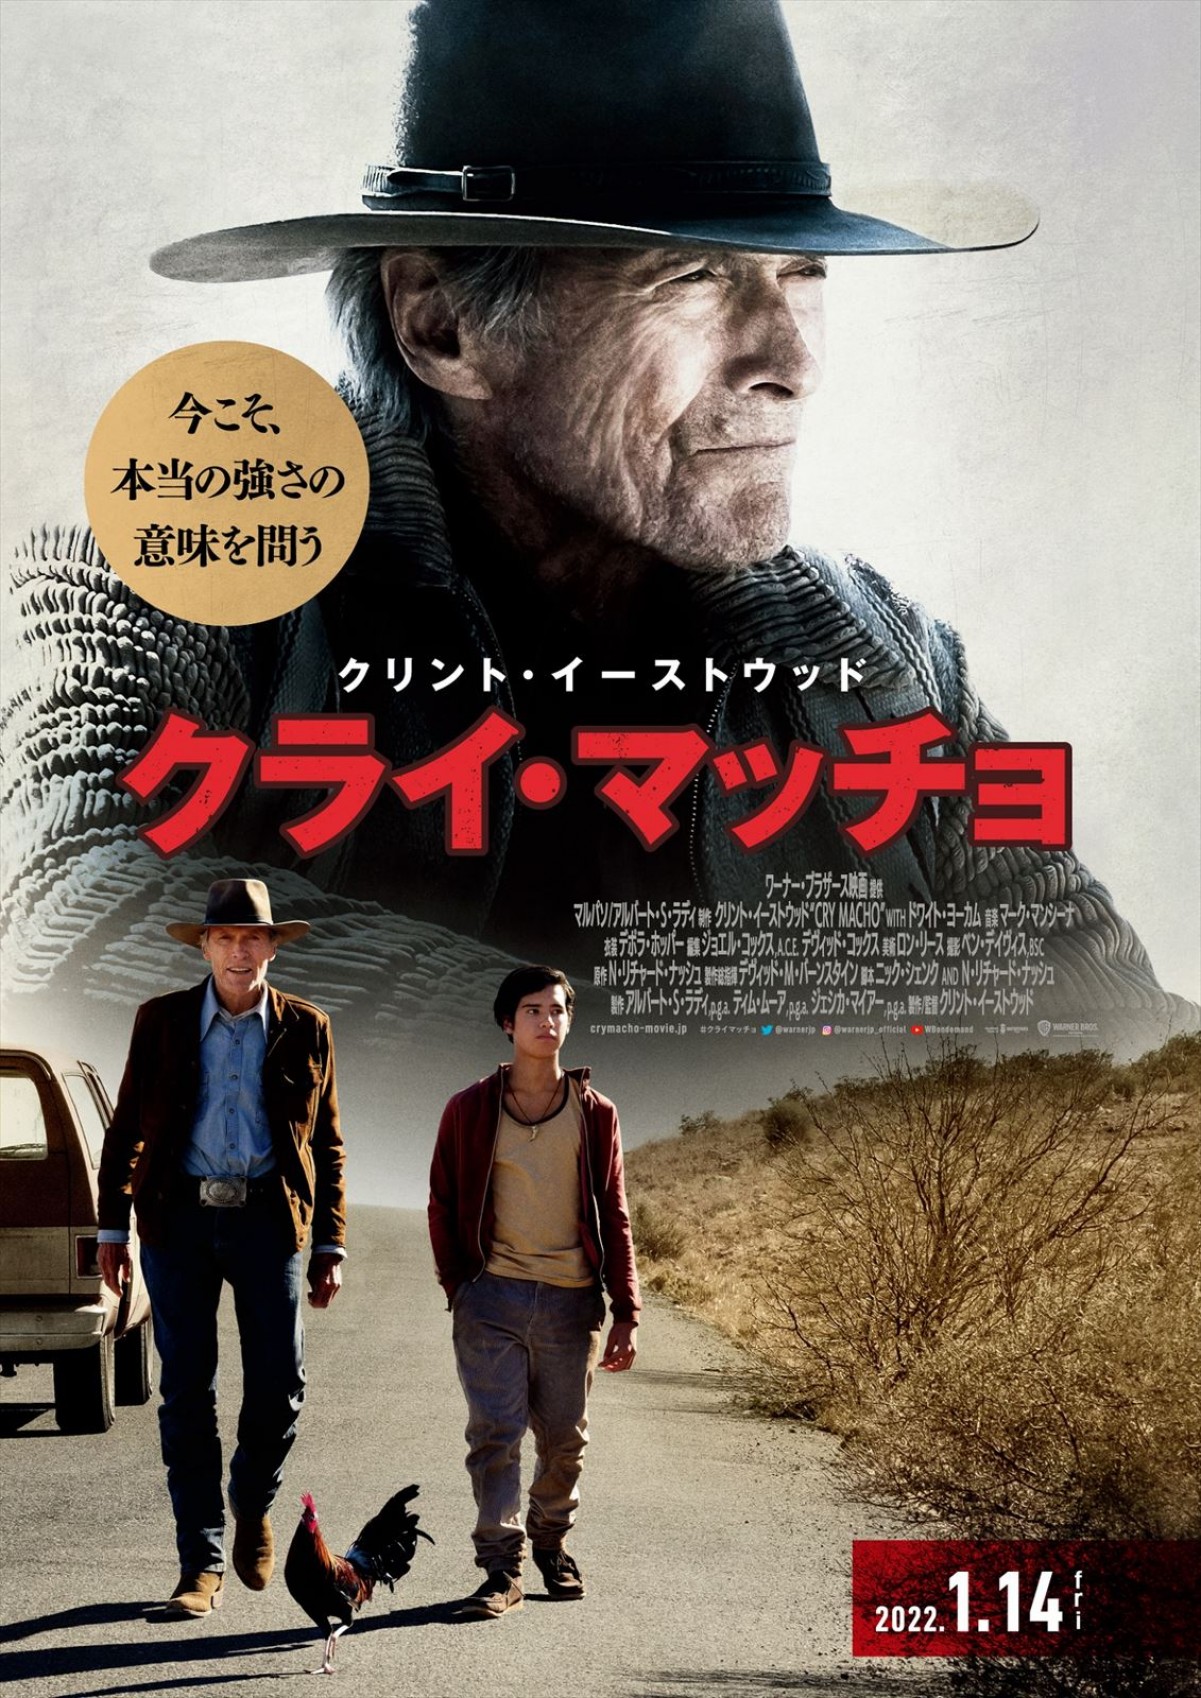 クリント・イーストウッド最新作『クライ・マッチョ』、真の“強さ”を語りかける日本版予告